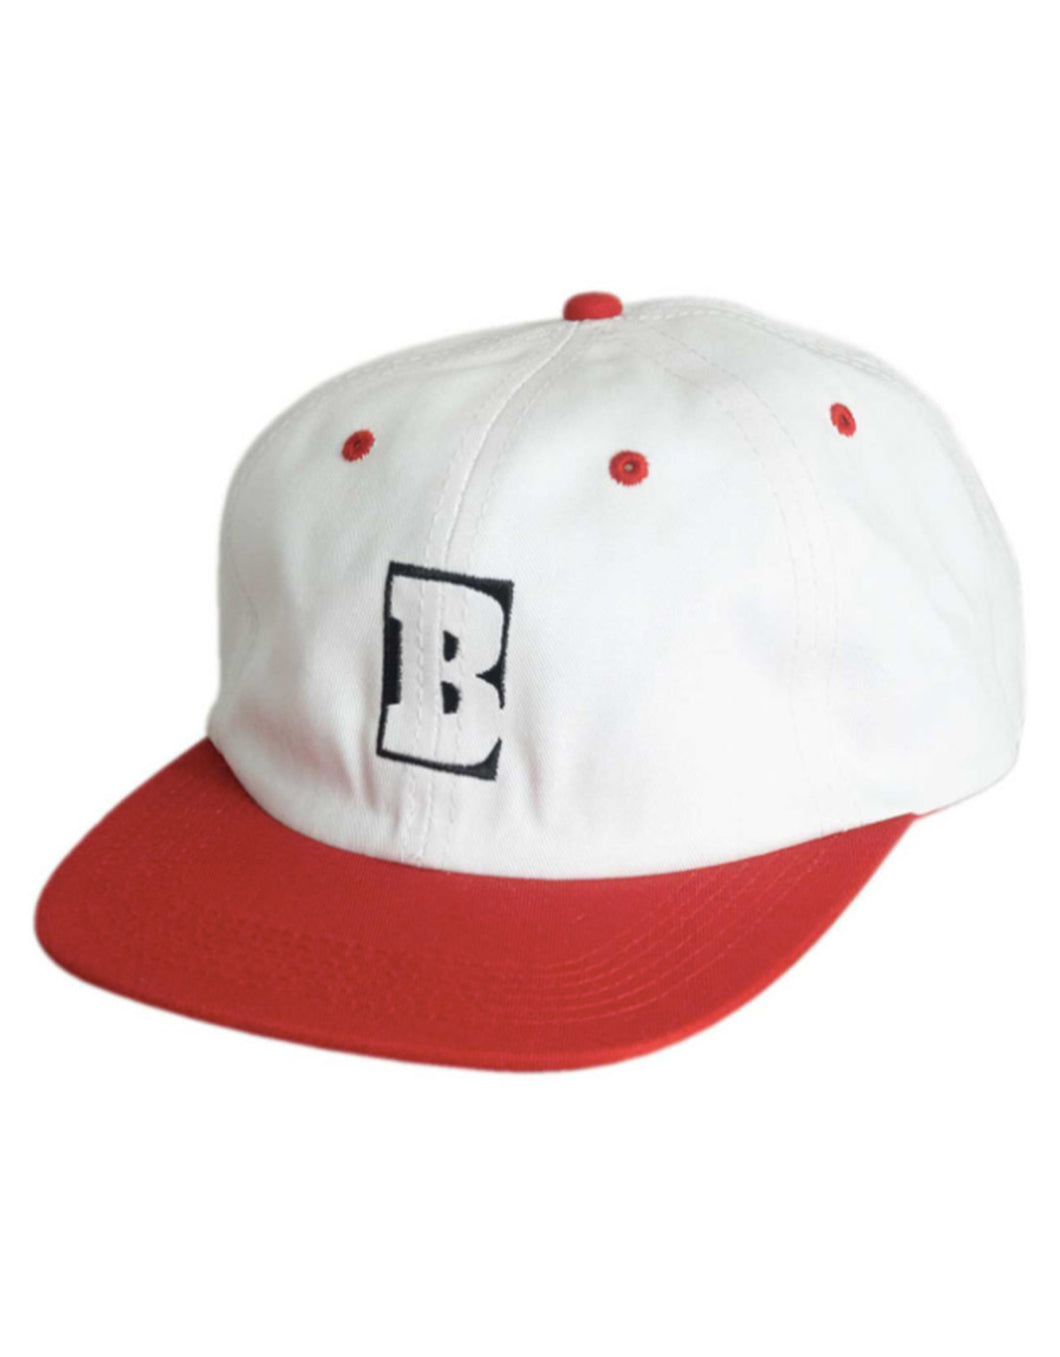 Baker Hat Capital B White Red